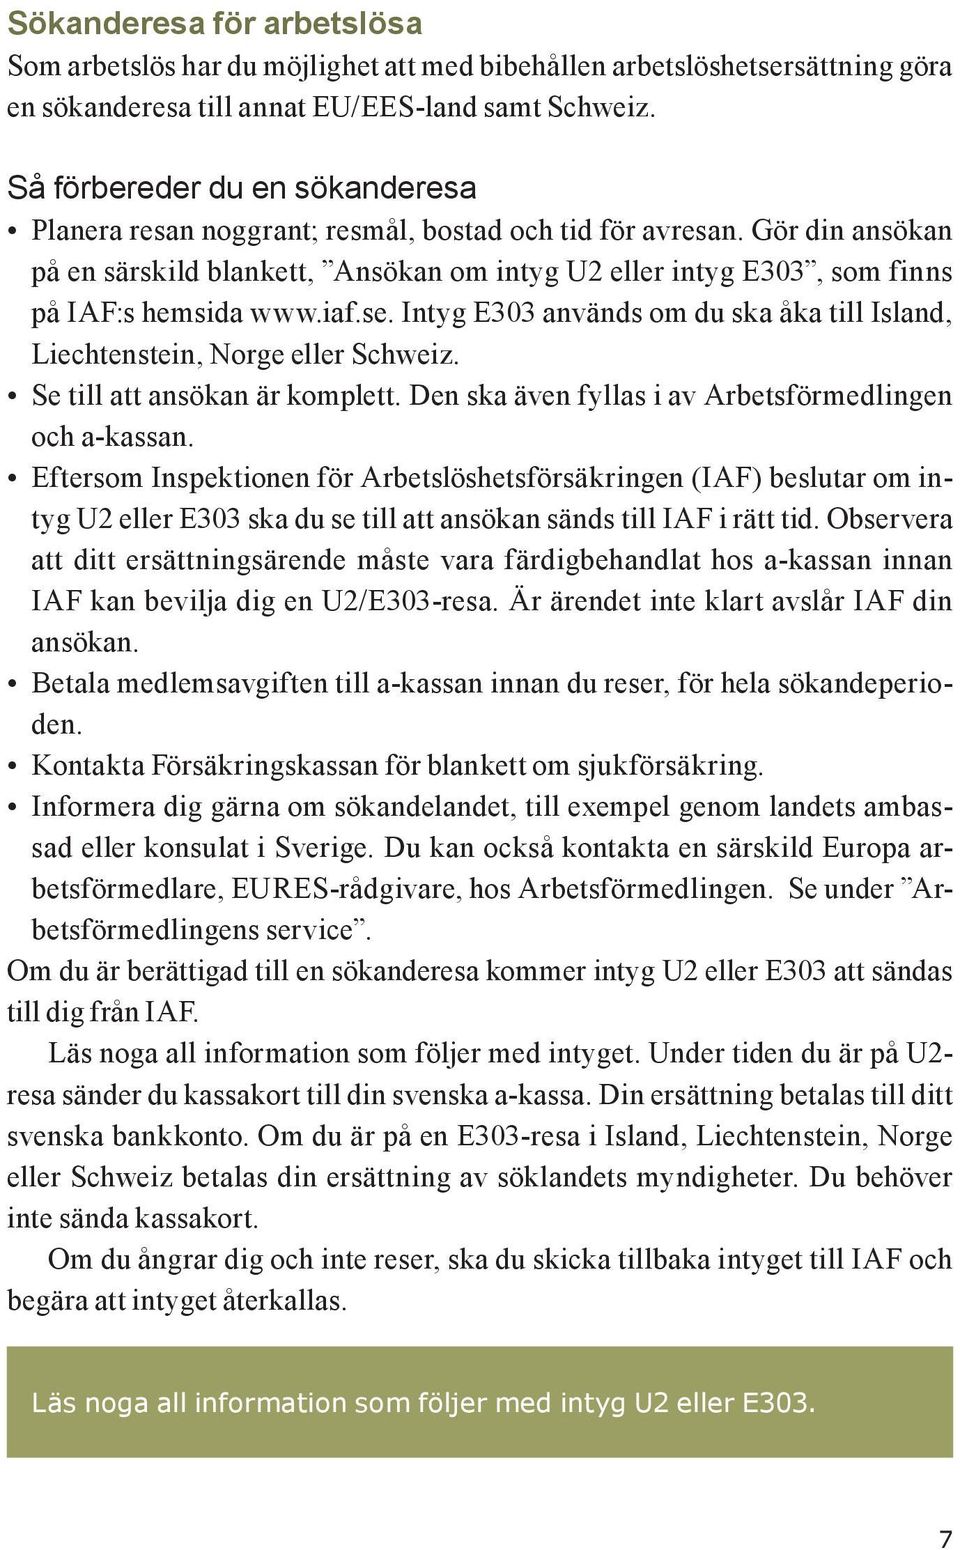 Gör din ansökan på en särskild blankett, Ansökan om intyg U2 eller intyg E303, som finns på IAF:s hemsida www.iaf.se. Intyg E303 används om du ska åka till Island, Liechtenstein, Norge eller Schweiz.